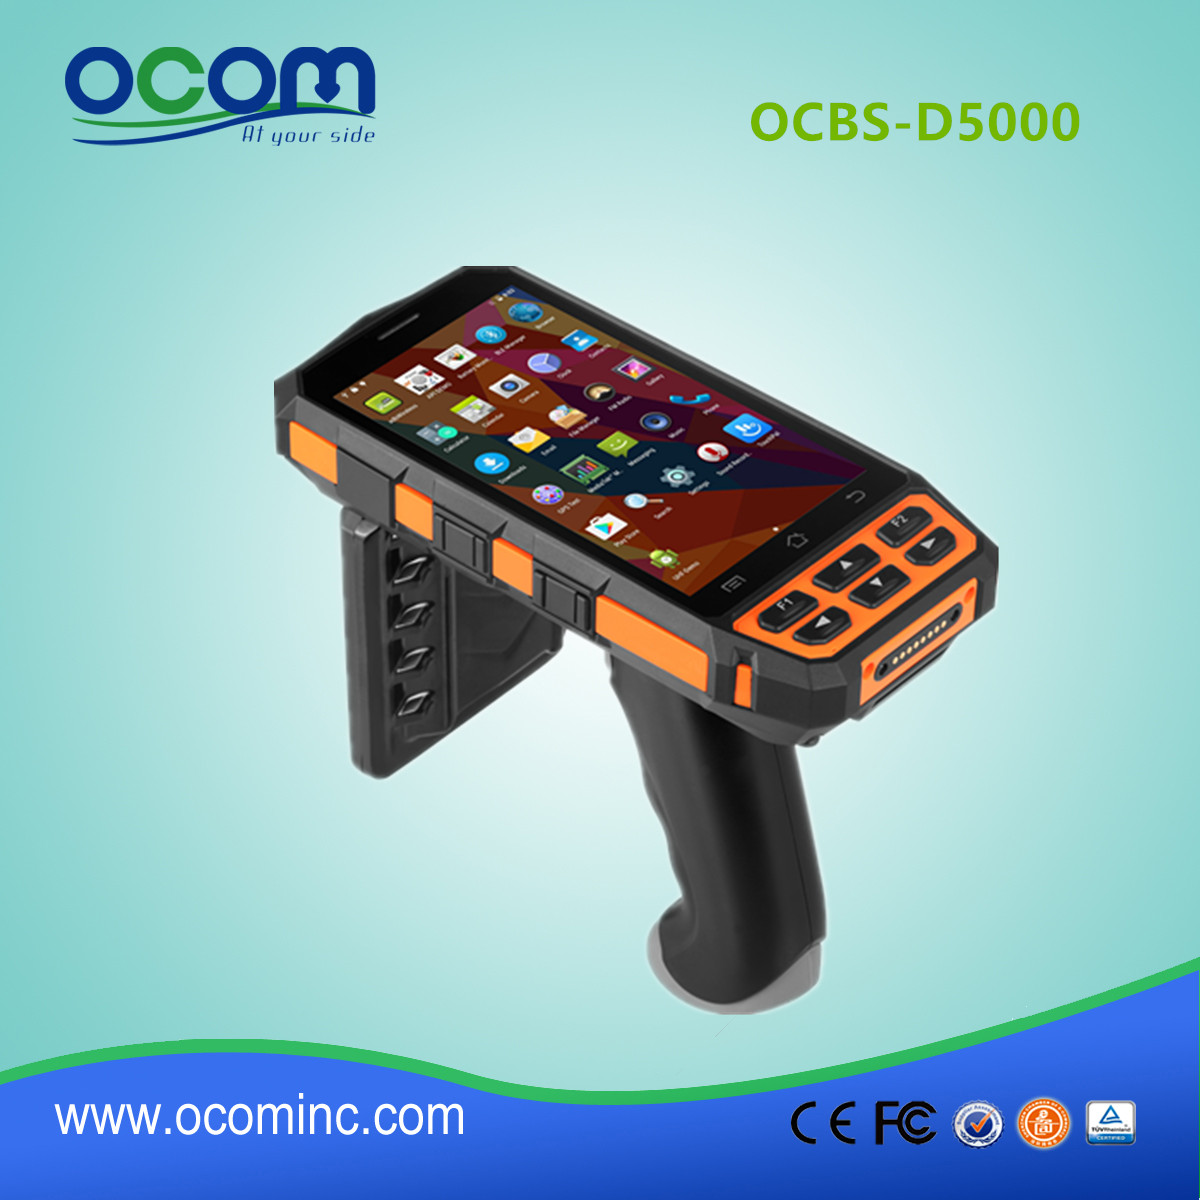 新型OCBS-D5000 Android工业手持终端